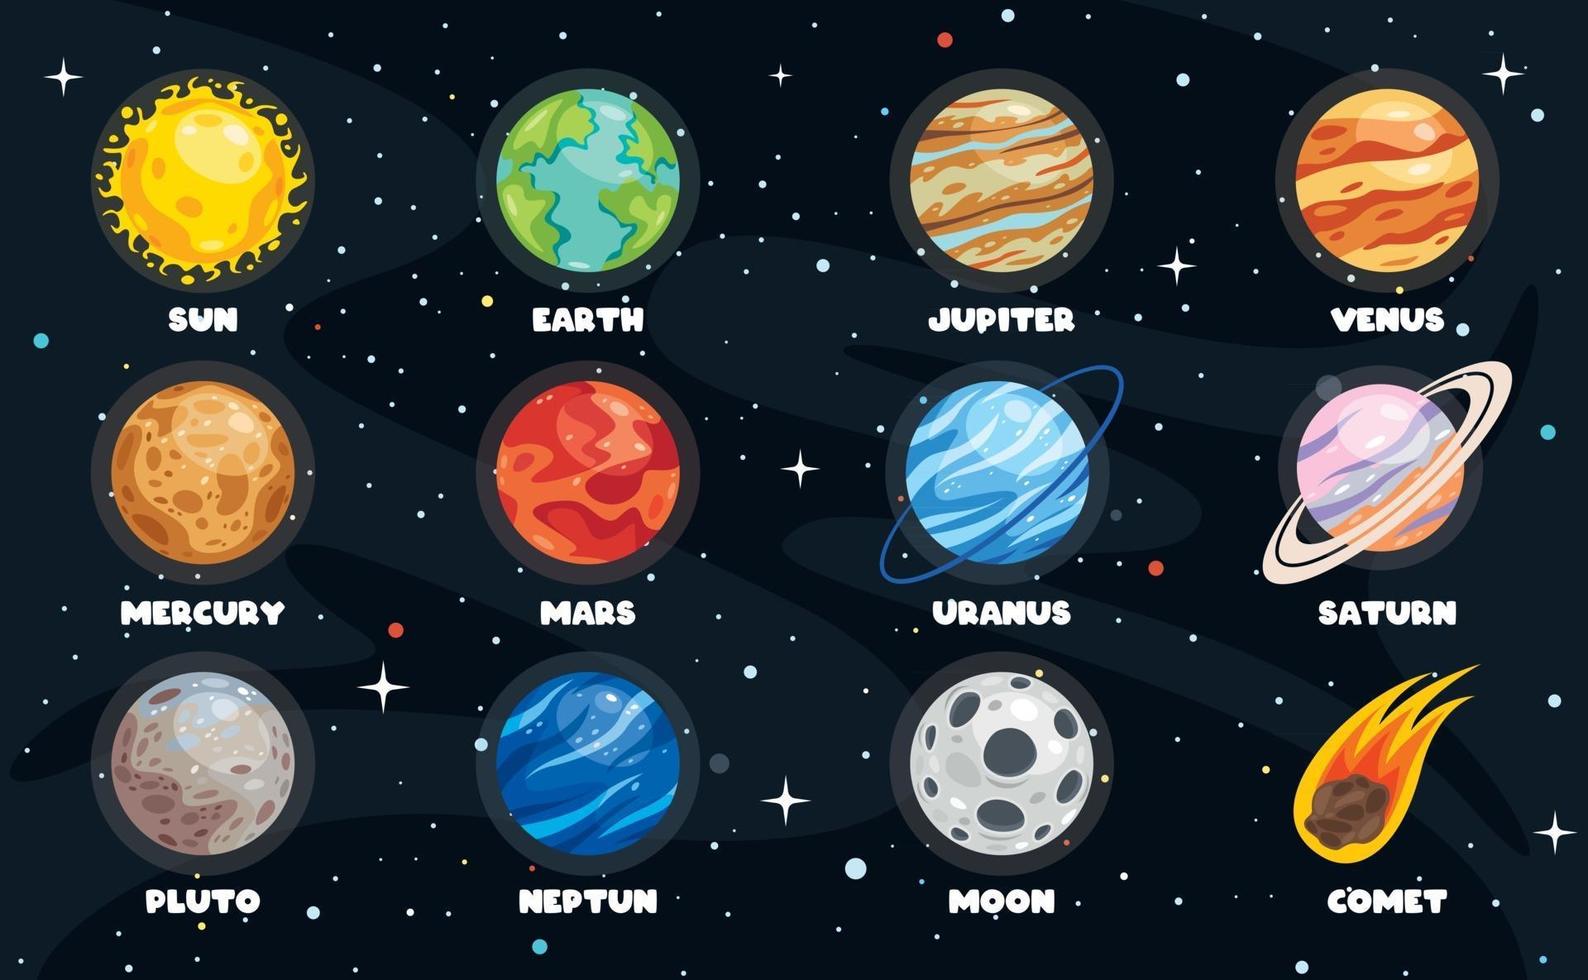 planetas de colores del sistema solar vector